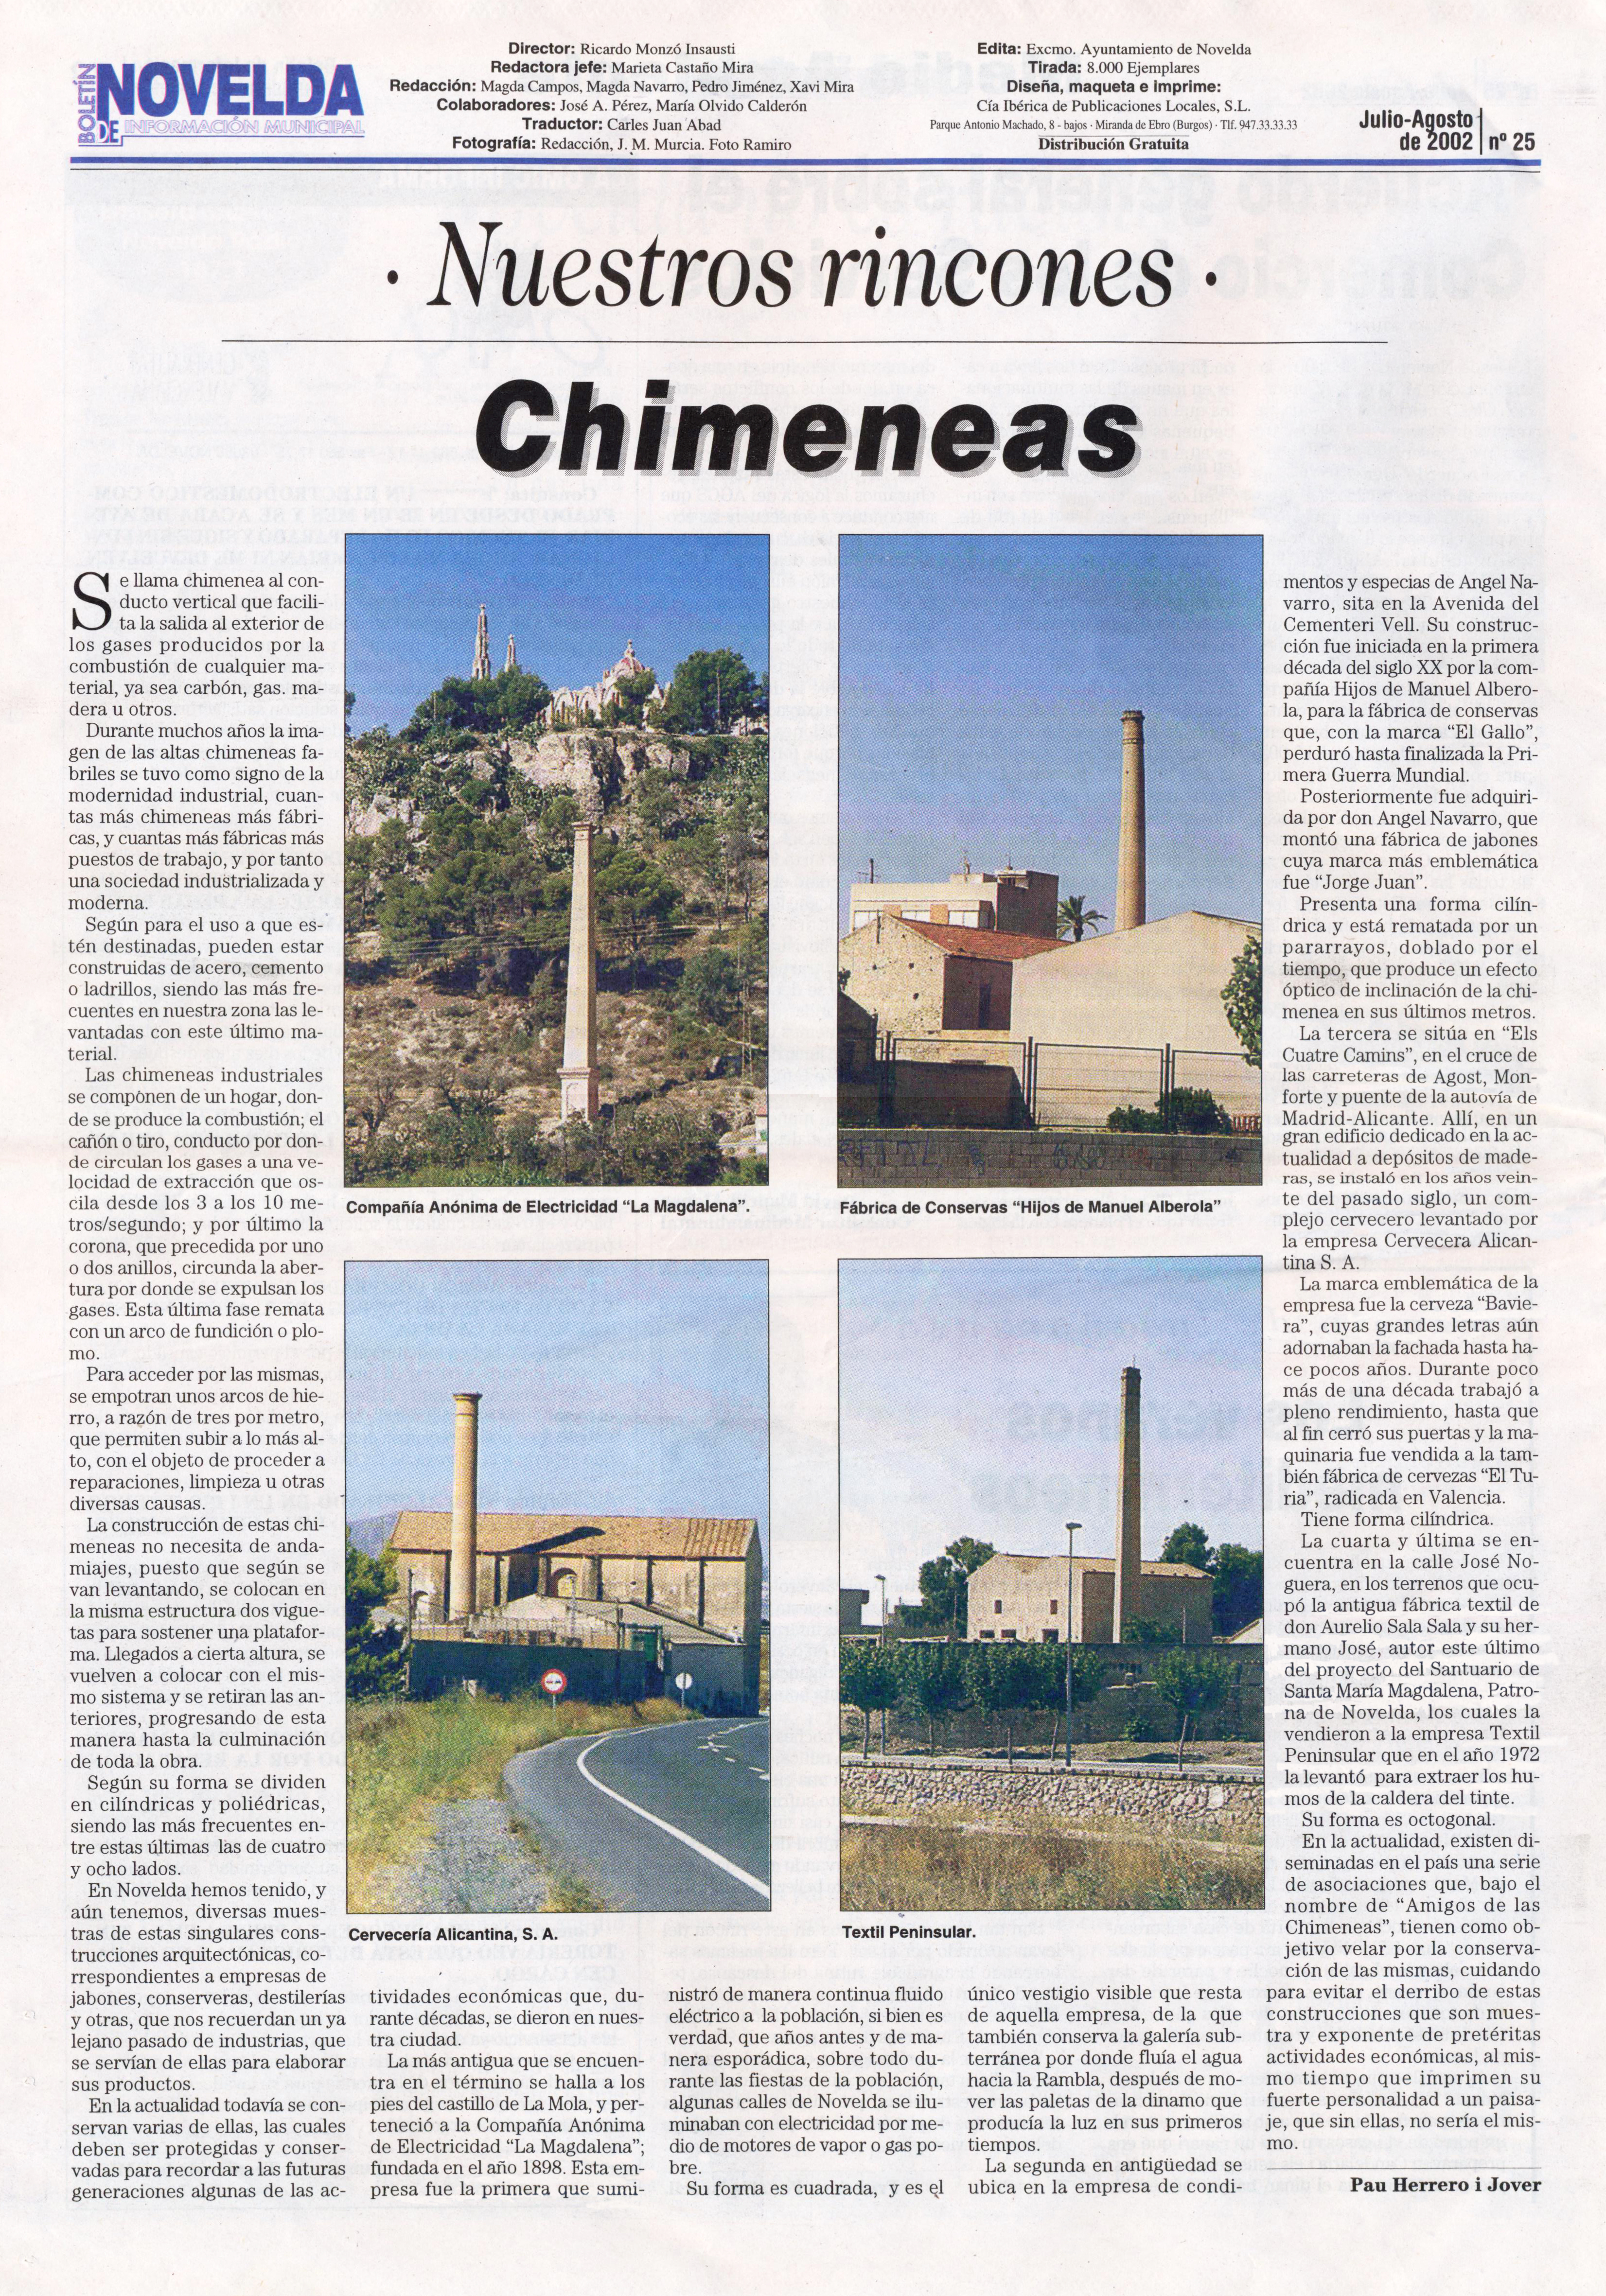 BIM_200207-08 Chimeneas